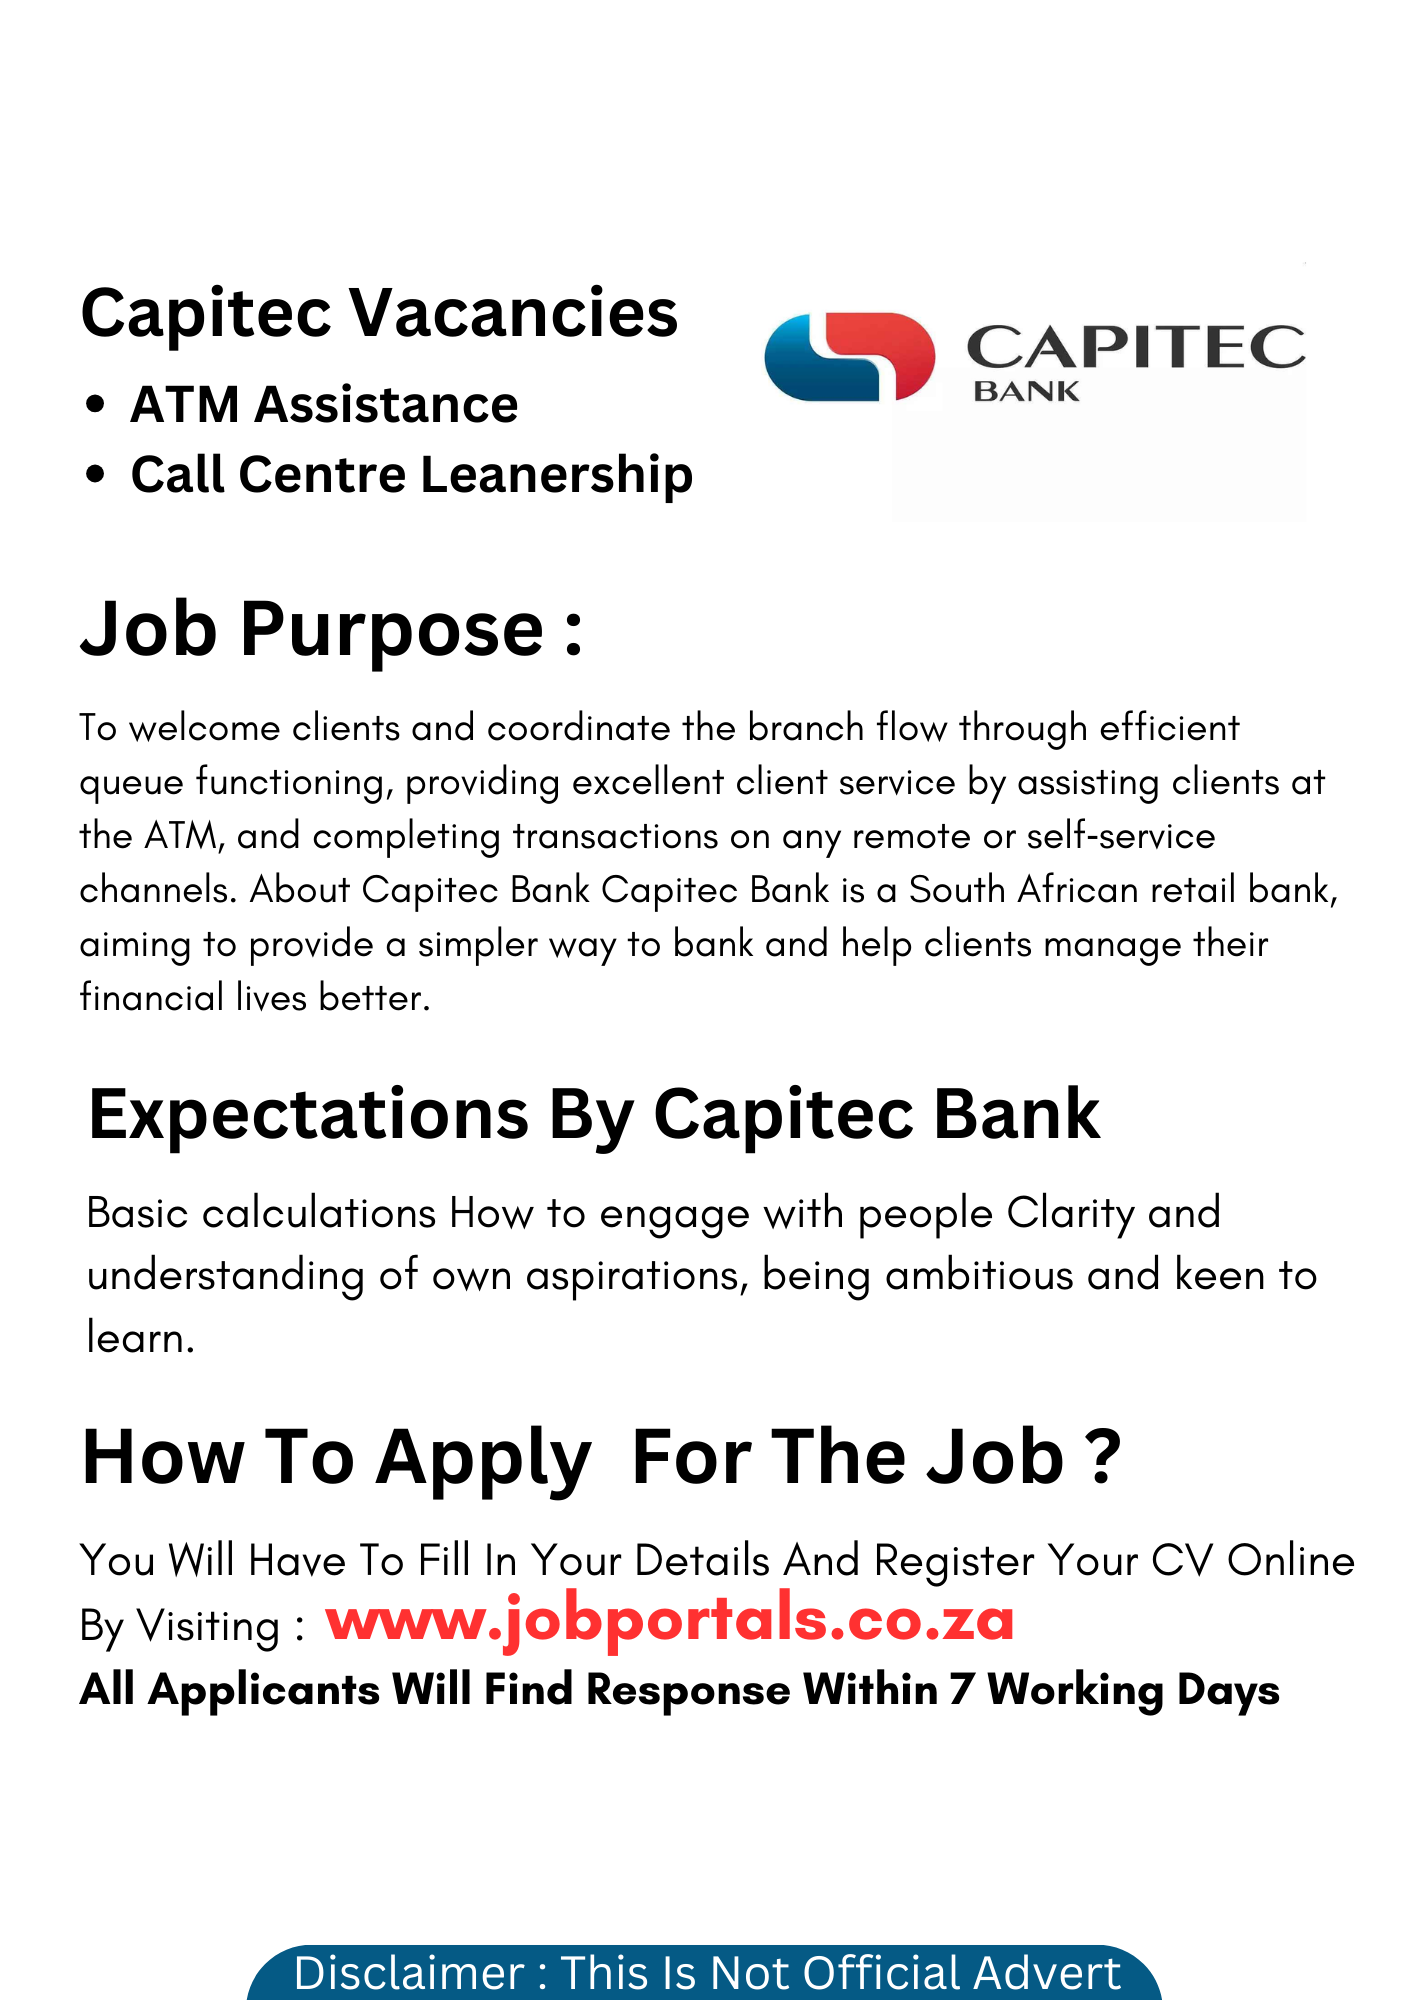 Capitec Bank Jobs: Upload Your CV